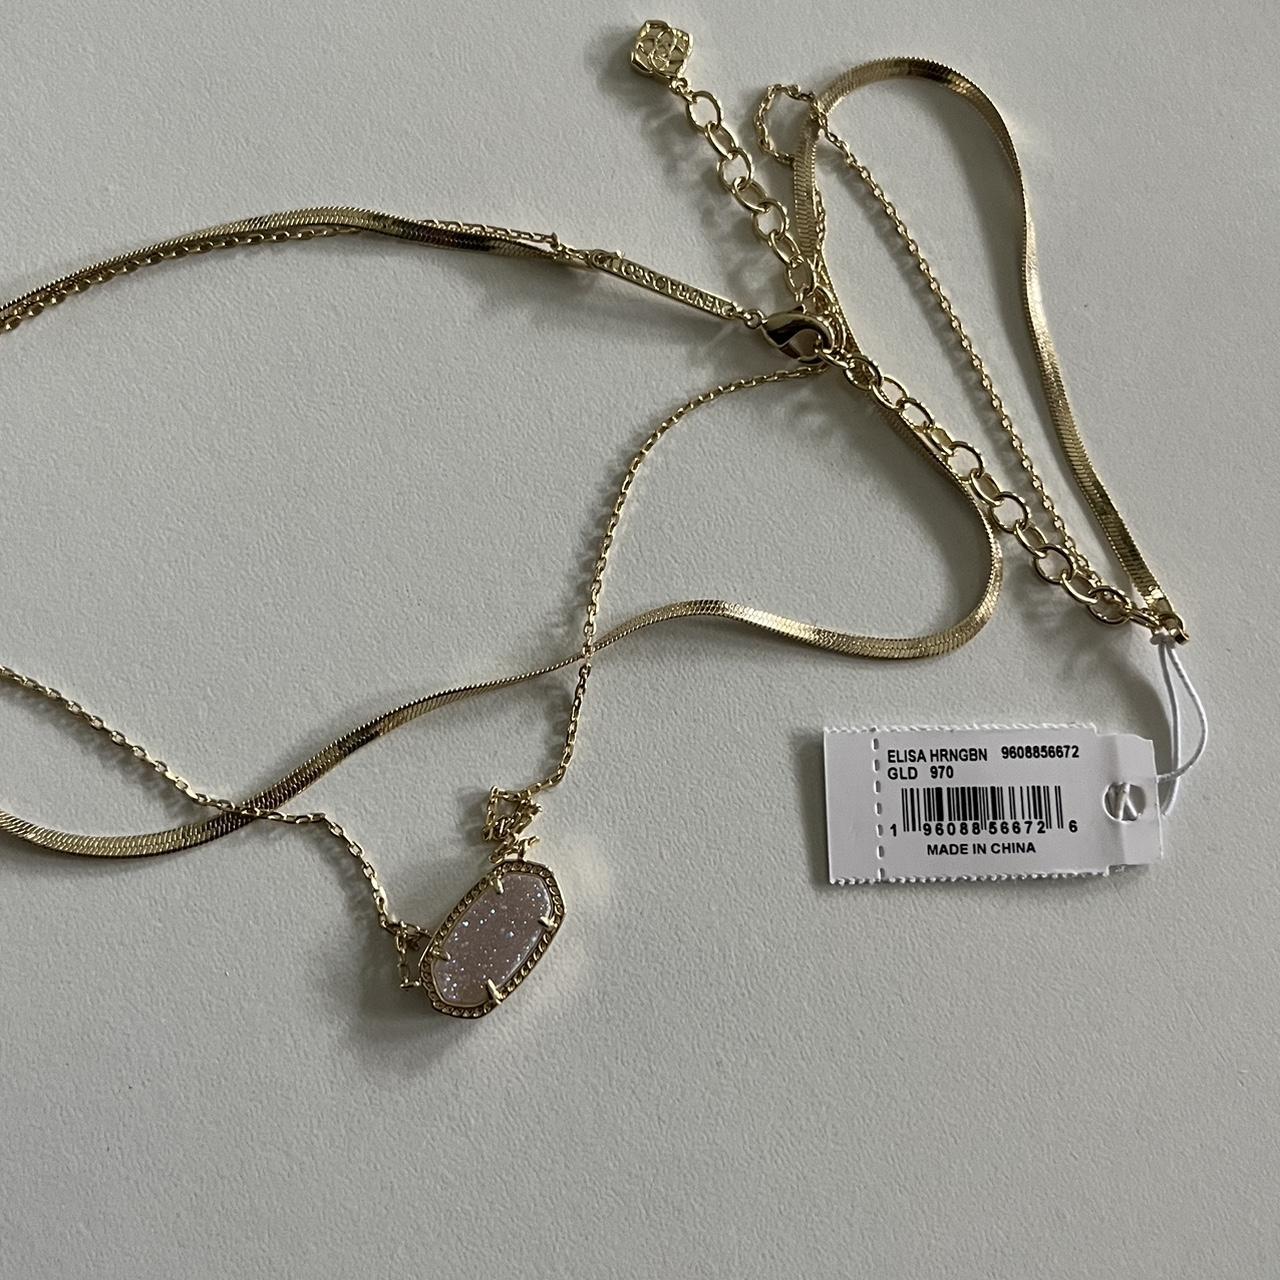 Kendra Scott Herringbone Chain Necklace worn by Det. Kelly Duff (Adrienne  C. Moore) as seen in Pretty Hard Cases (S03E02) | Spotern